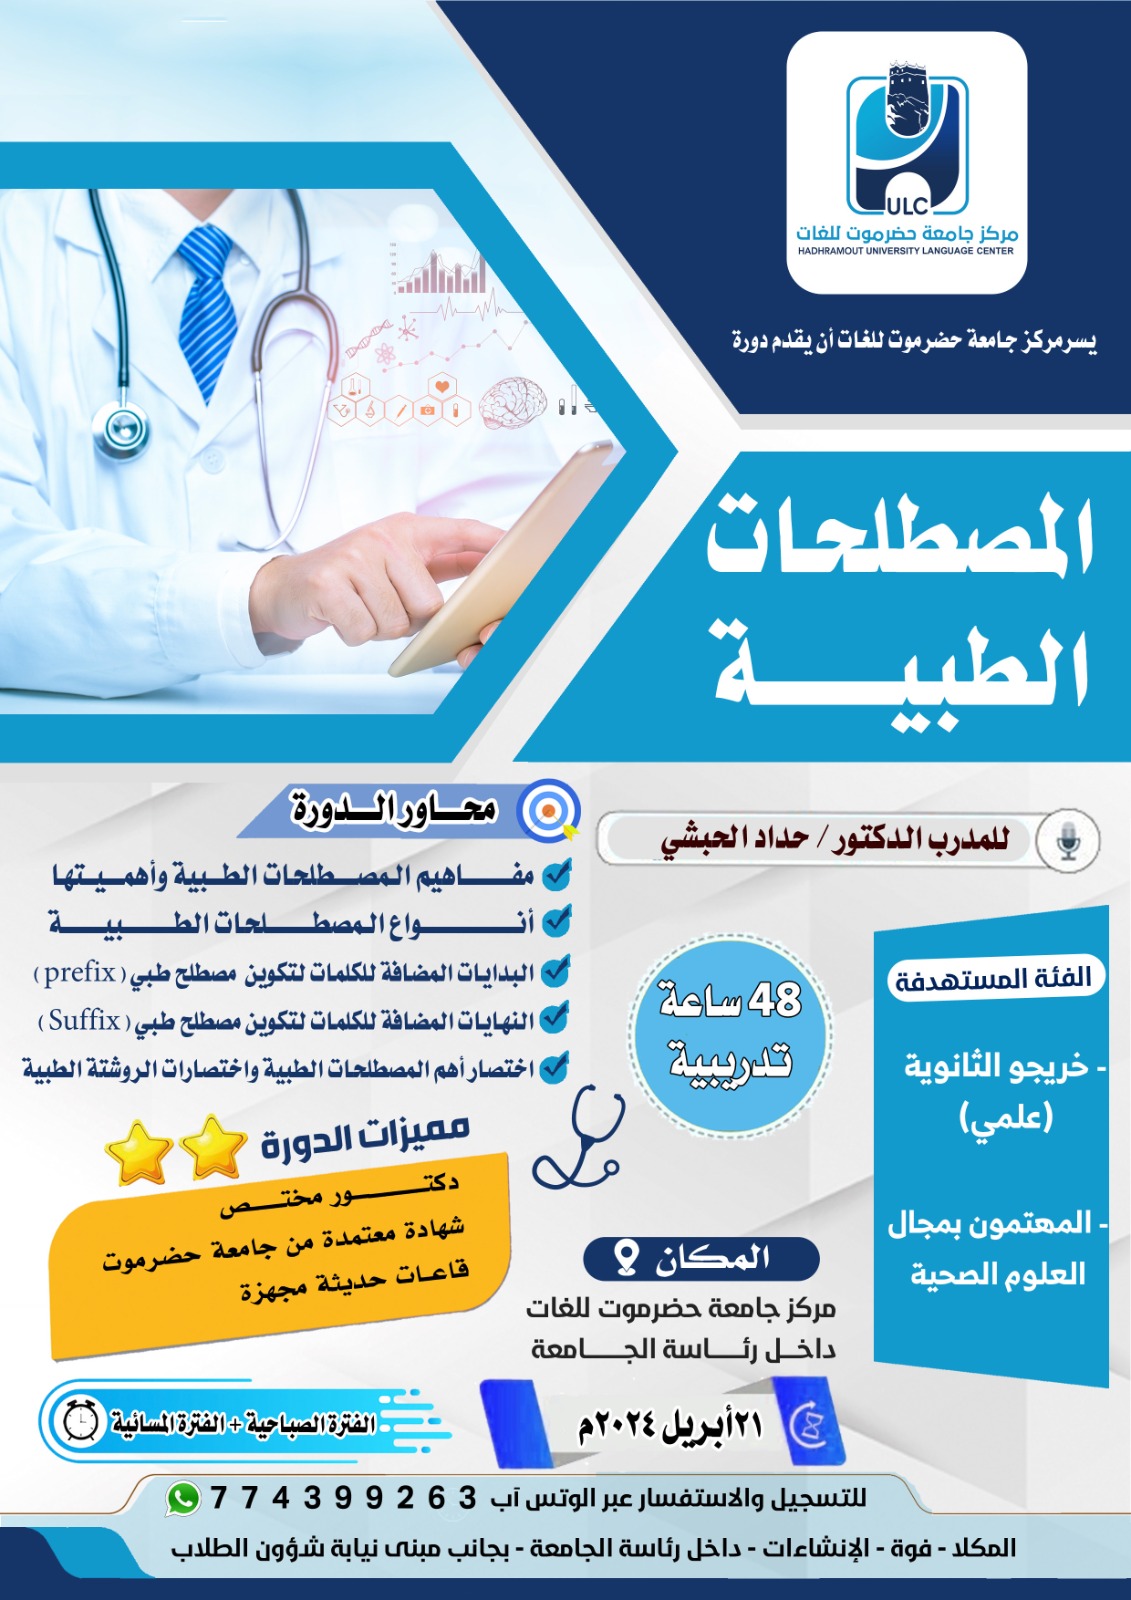 مركز جامعة حضرموت للغات يعلن دورة المصطلحات الطبية للمدرب الدكتور حداد الحبشي